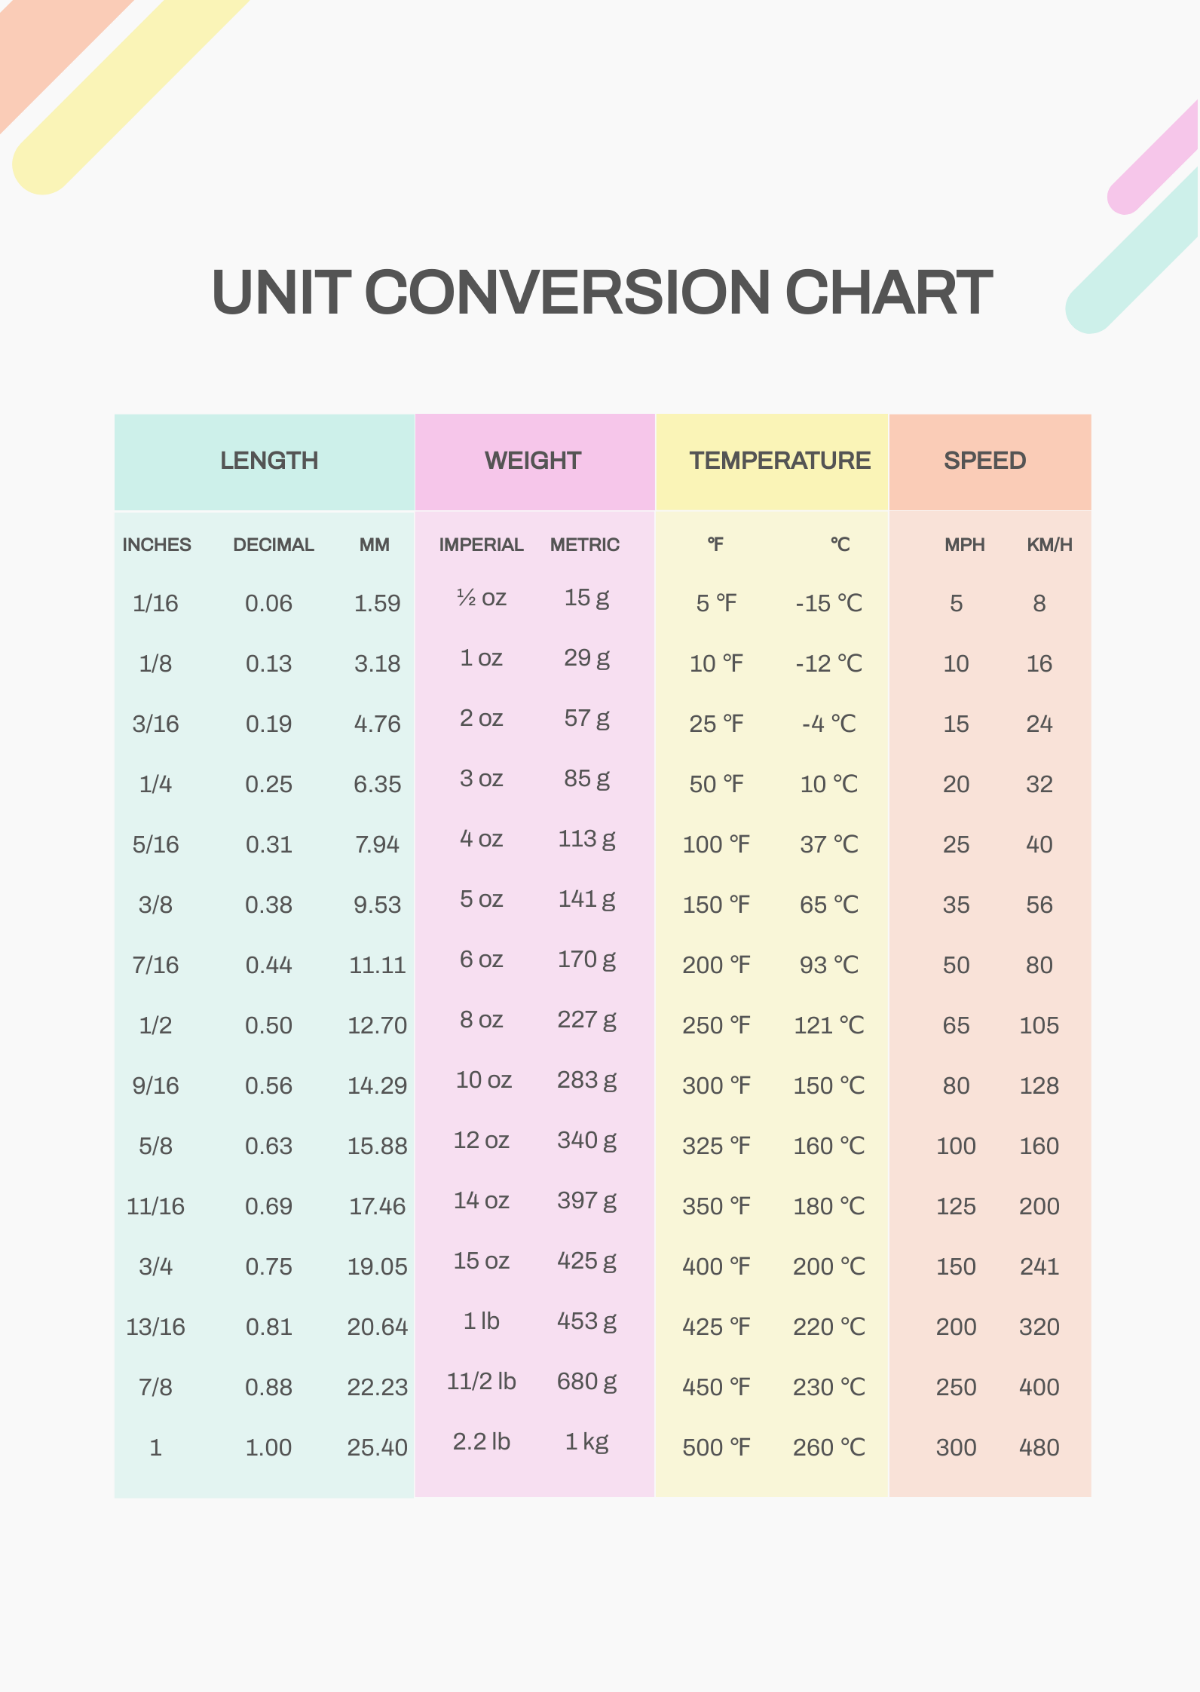 Unit Conversion Chart Template